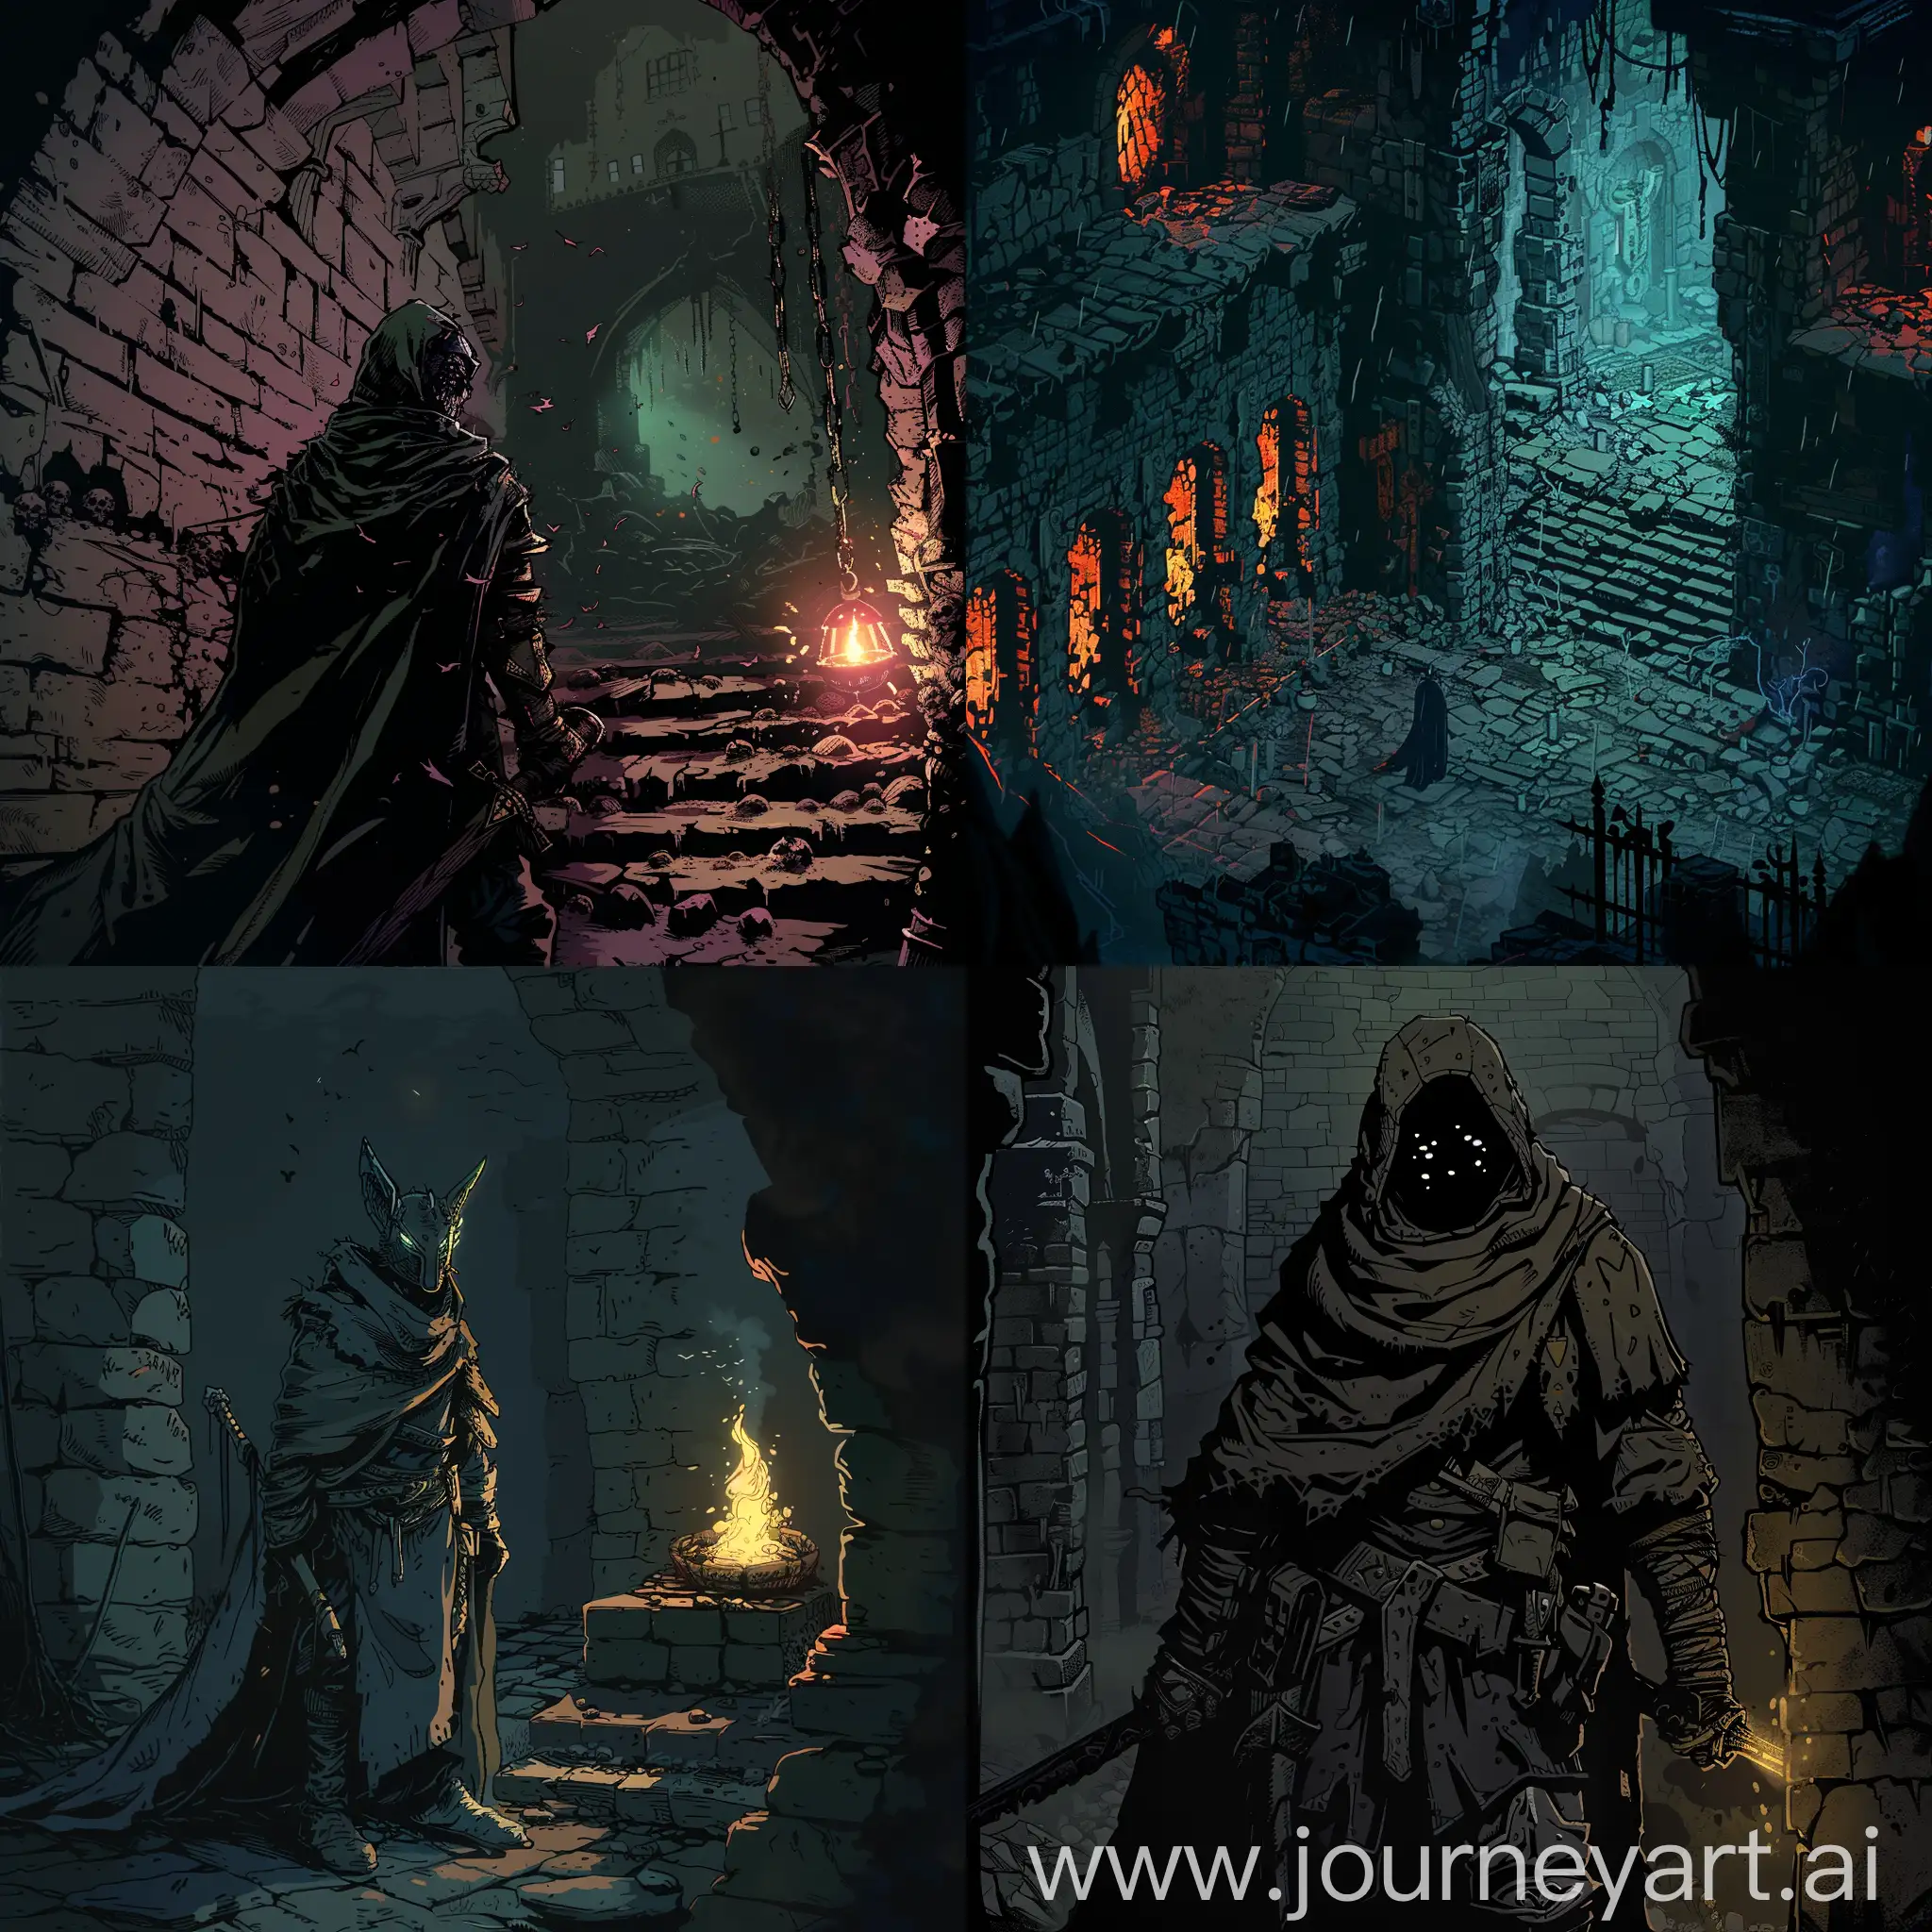 Fantasy-Warrior-Confronts-Darkness-in-Dungeon-Scene